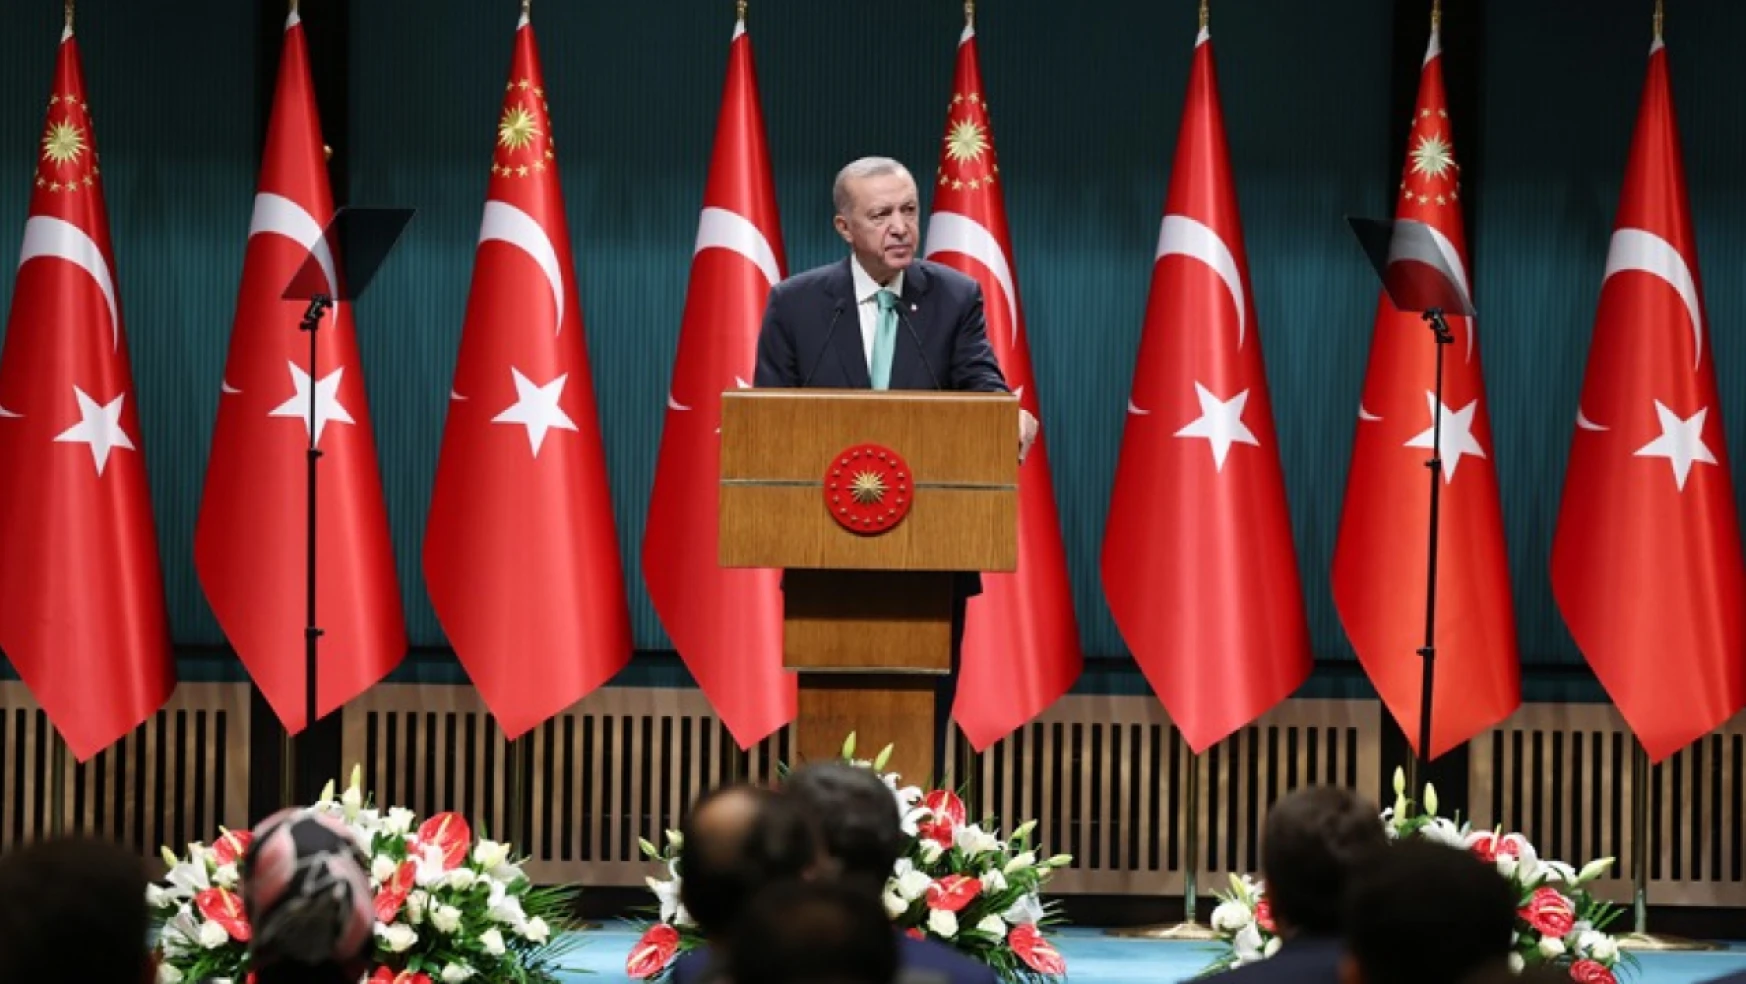 Cumhurbaşkanı Erdoğan'dan cihaz desteği açıklaması